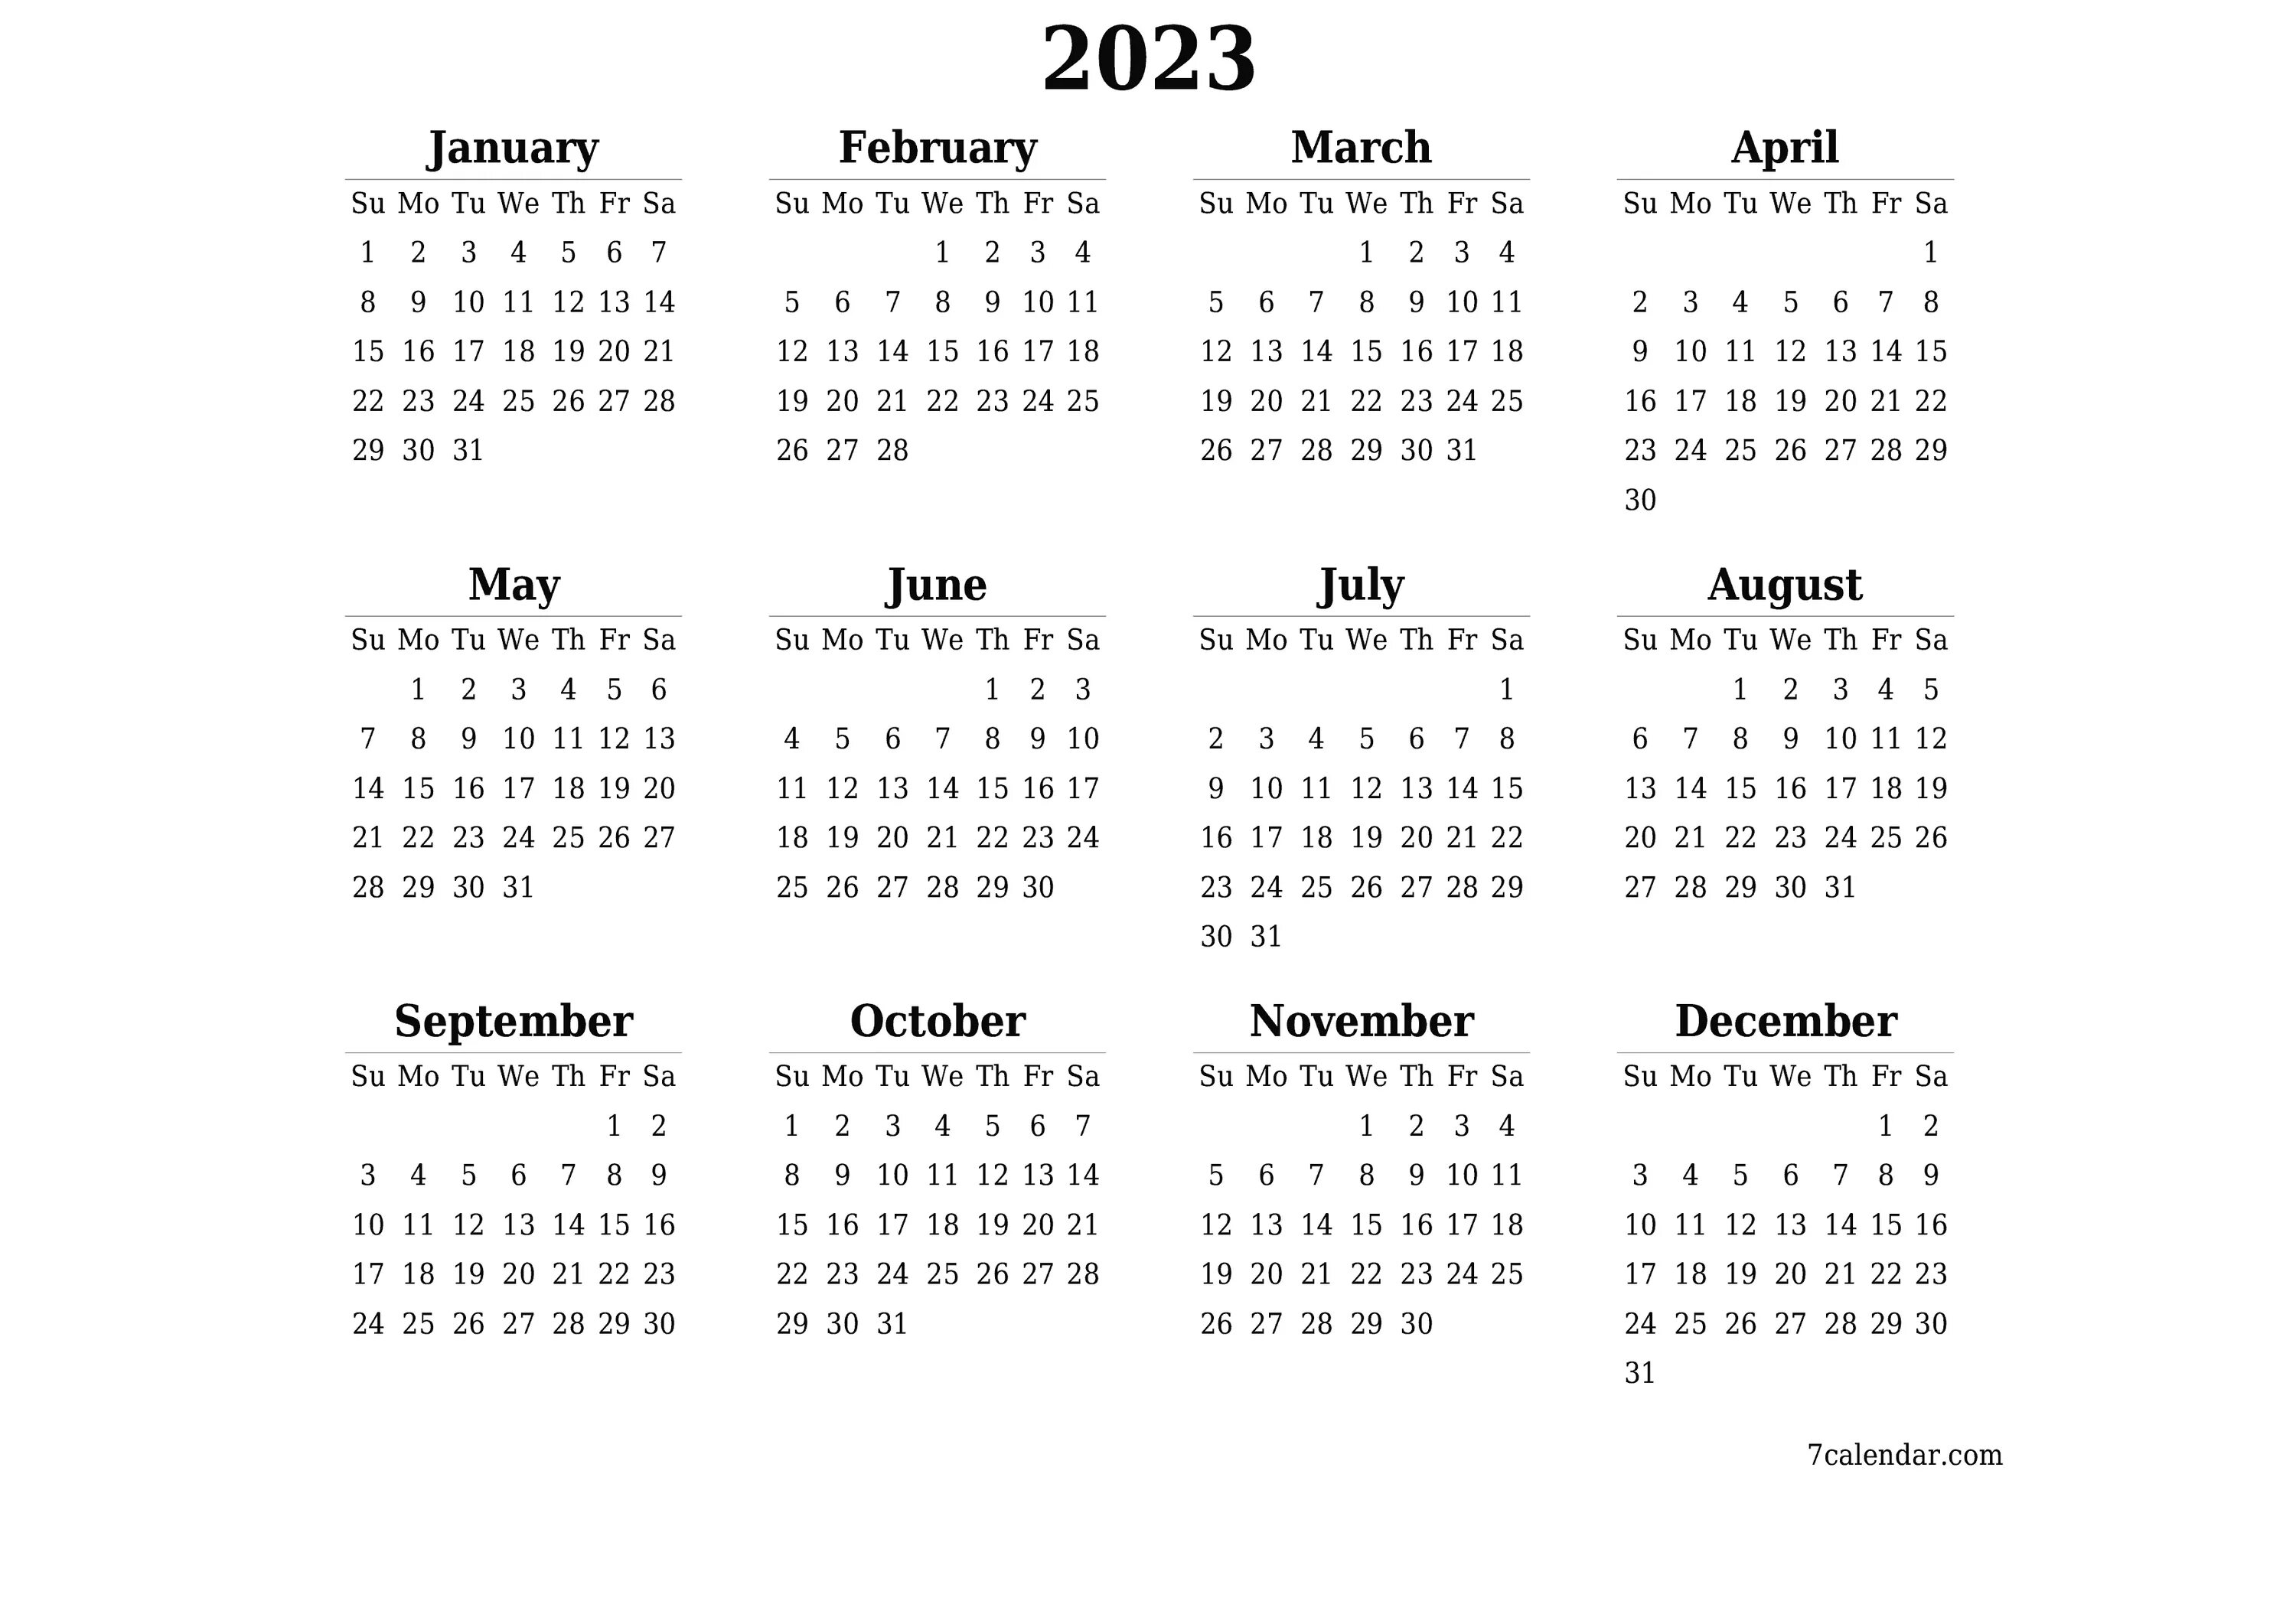 Календарь борщ на 2024 год. Календарь 2023-2026. Календарь 2023 2024 2025. Календарь 2023. Календарная сетка на 2024 год.